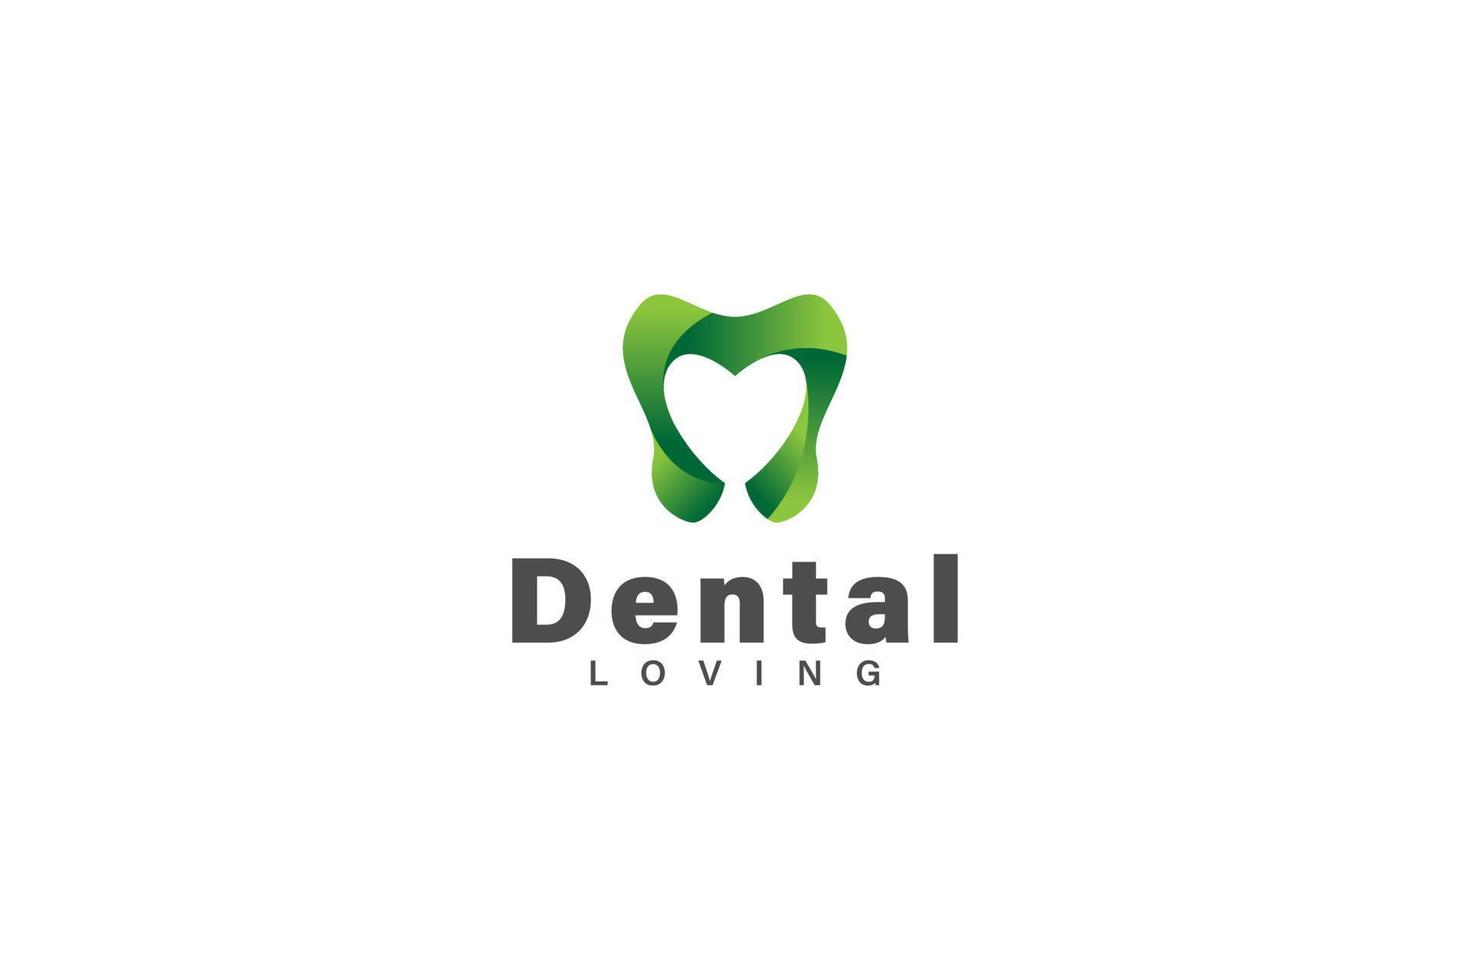 Dental liebend oder Dental Pflege Logo Design Vektor